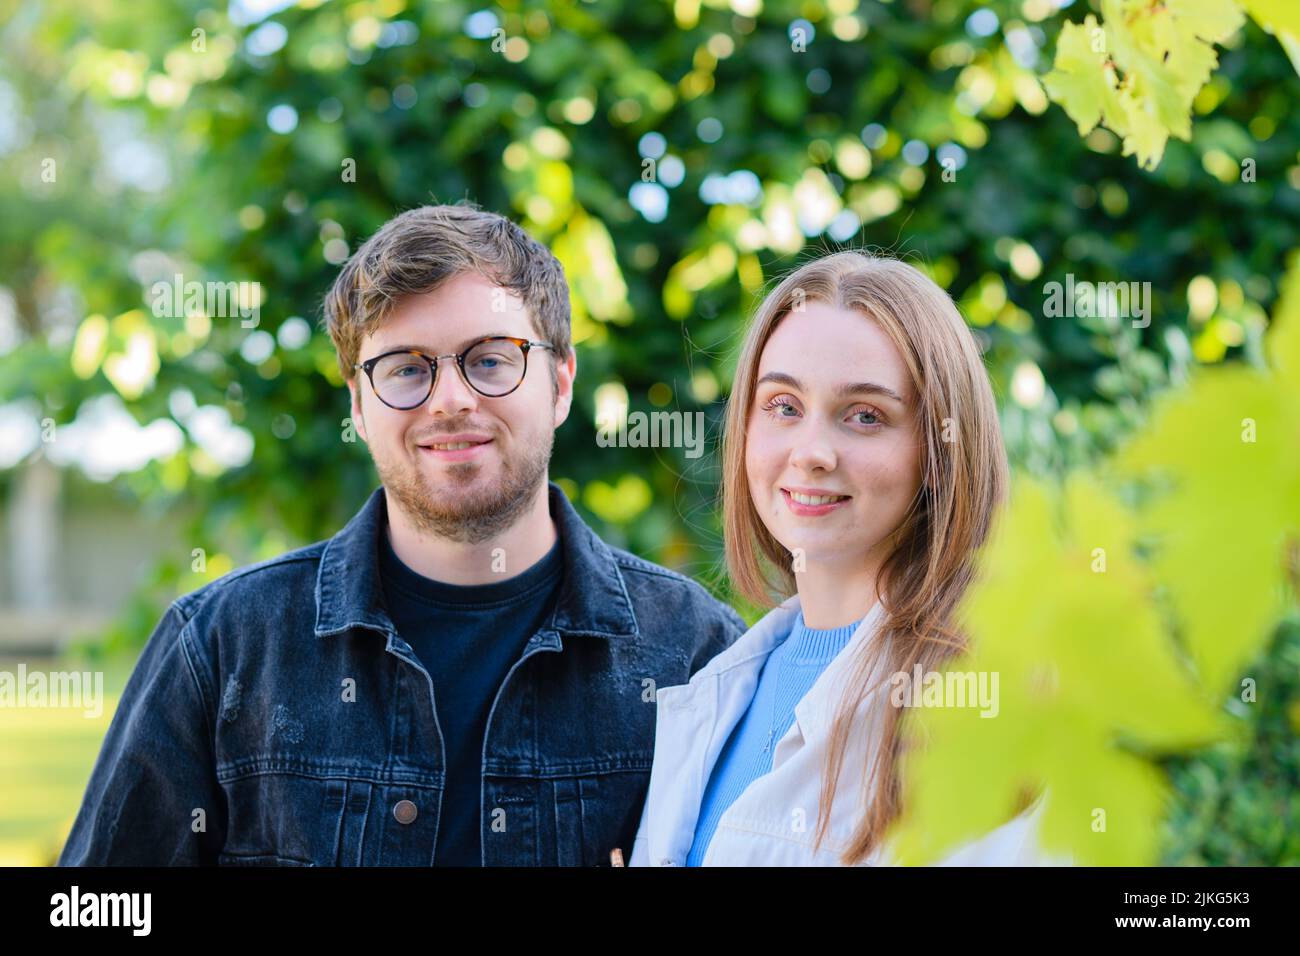 Ein Porträt eines glücklichen kaukasischen Paares, das vor den grünen Bäumen posiert Stockfoto